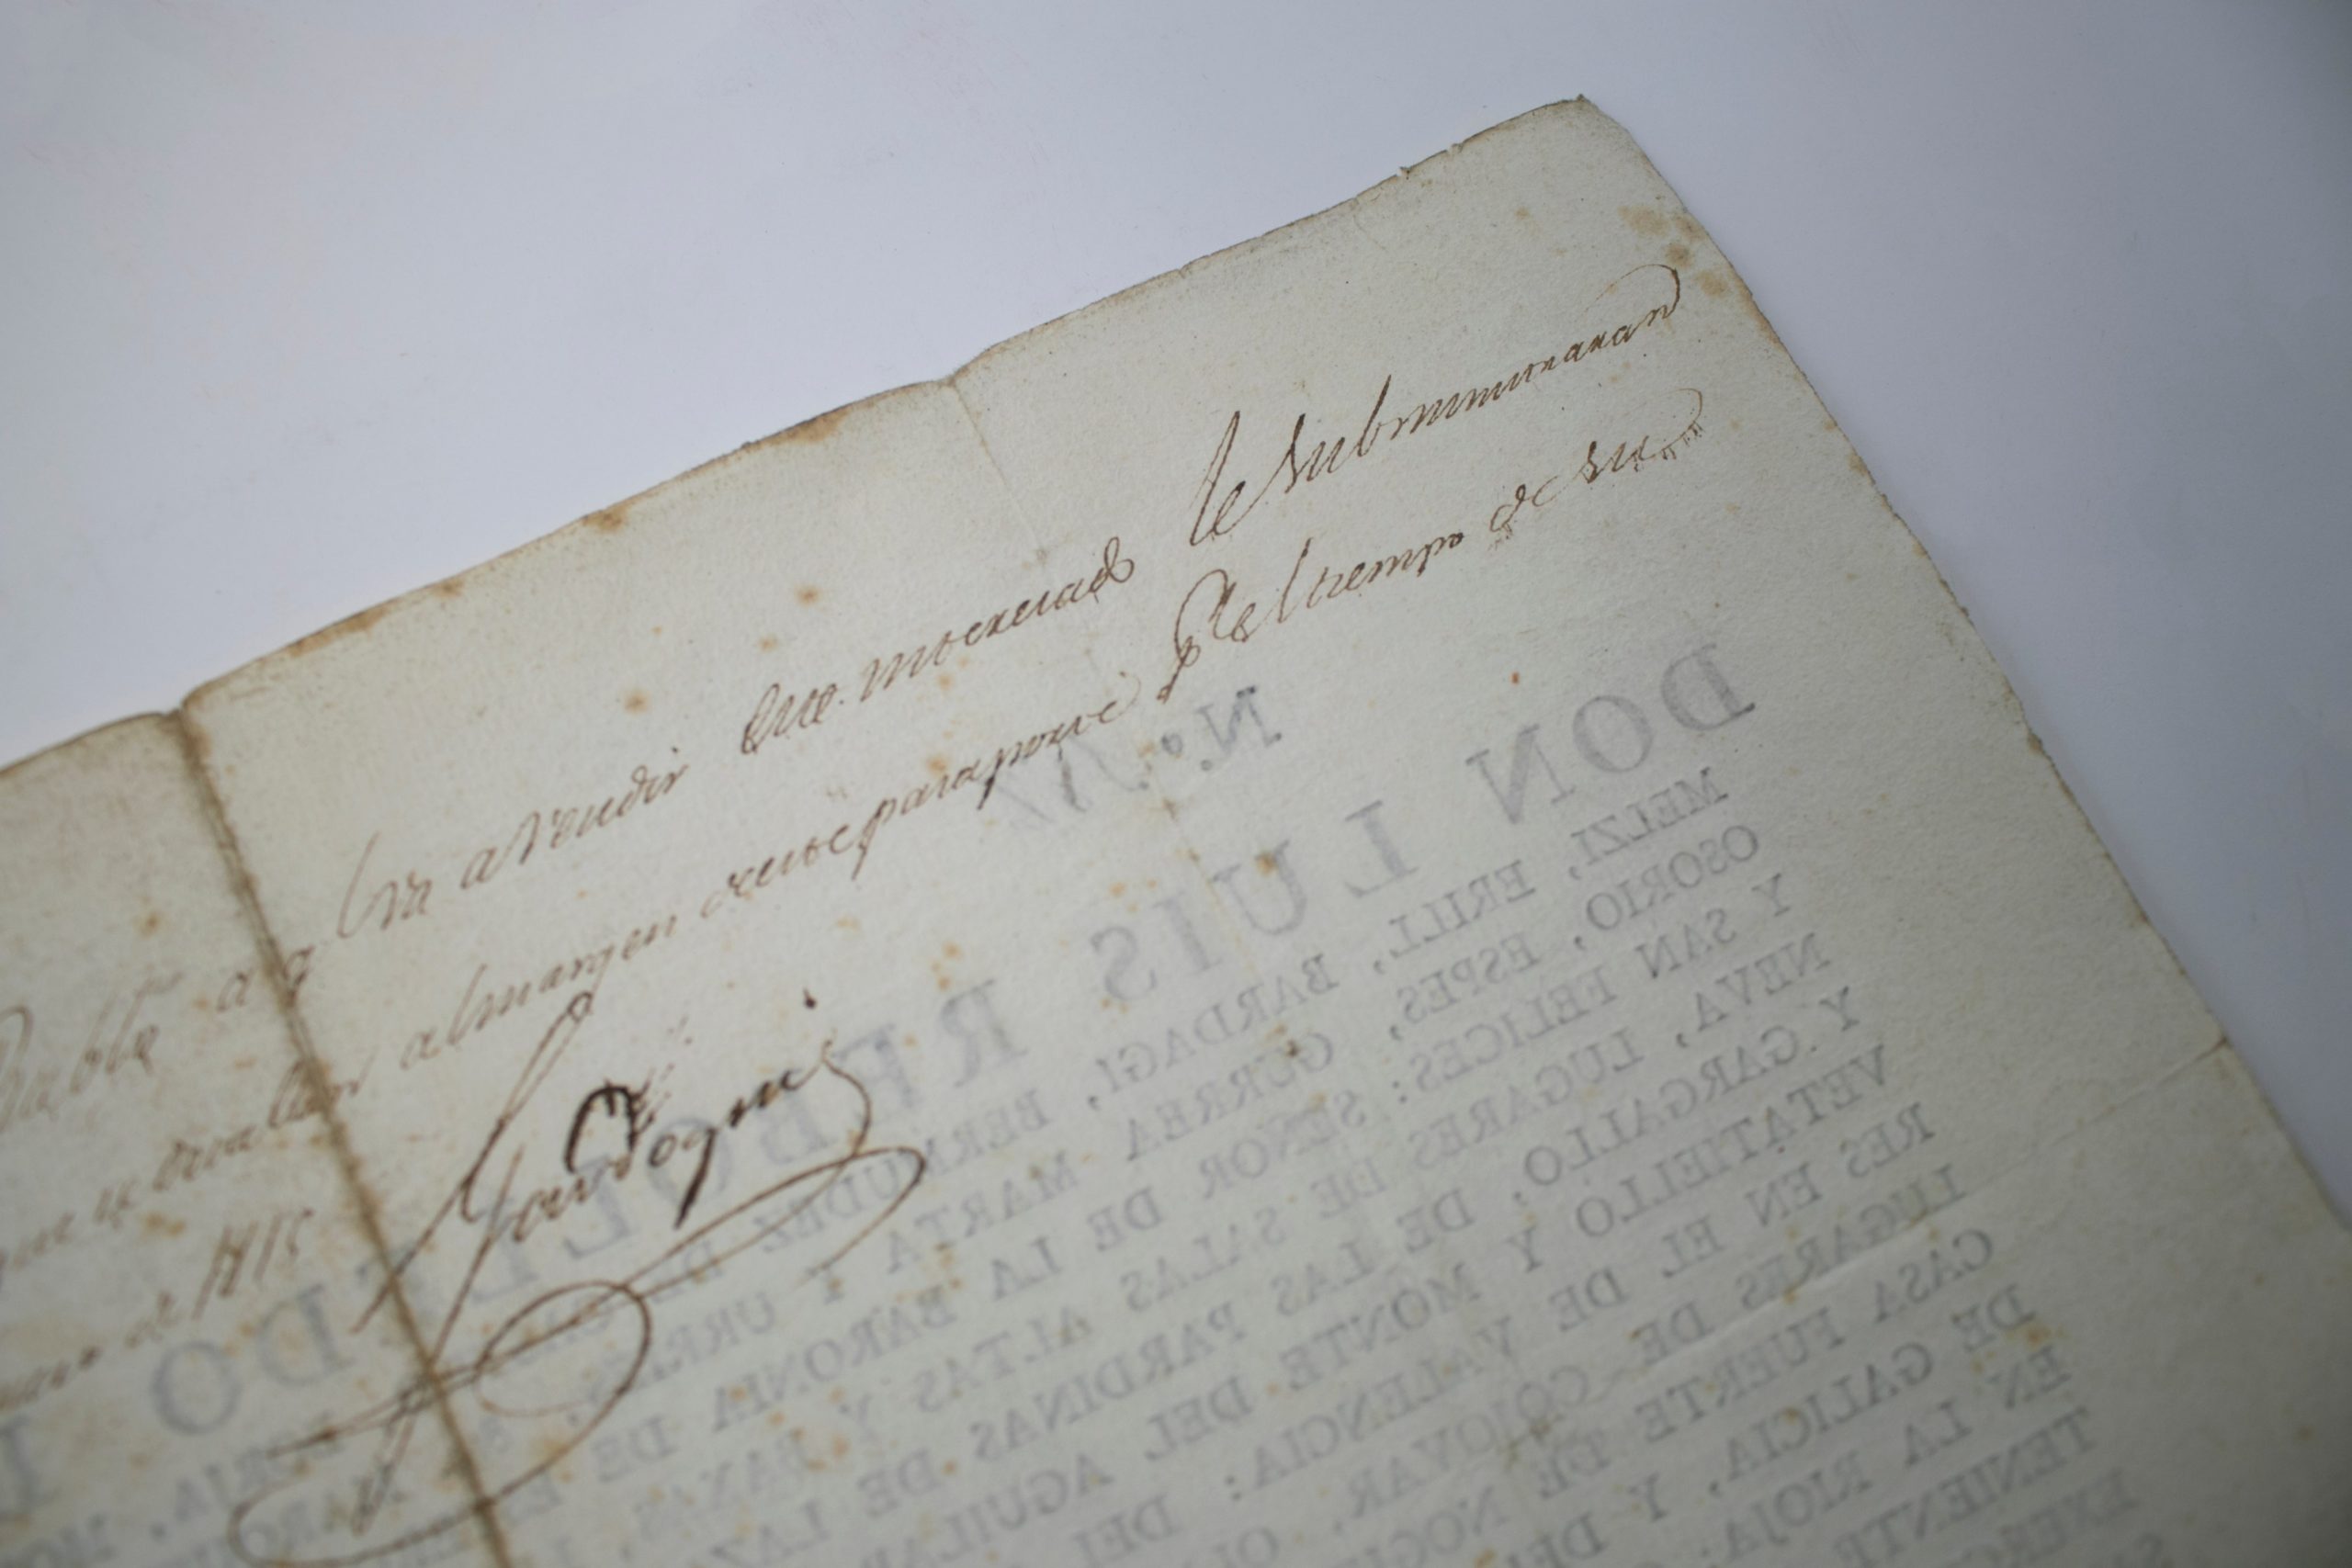 Pasaporte Español Escrito a Mano en Papel, Correspondiente al Año 1815